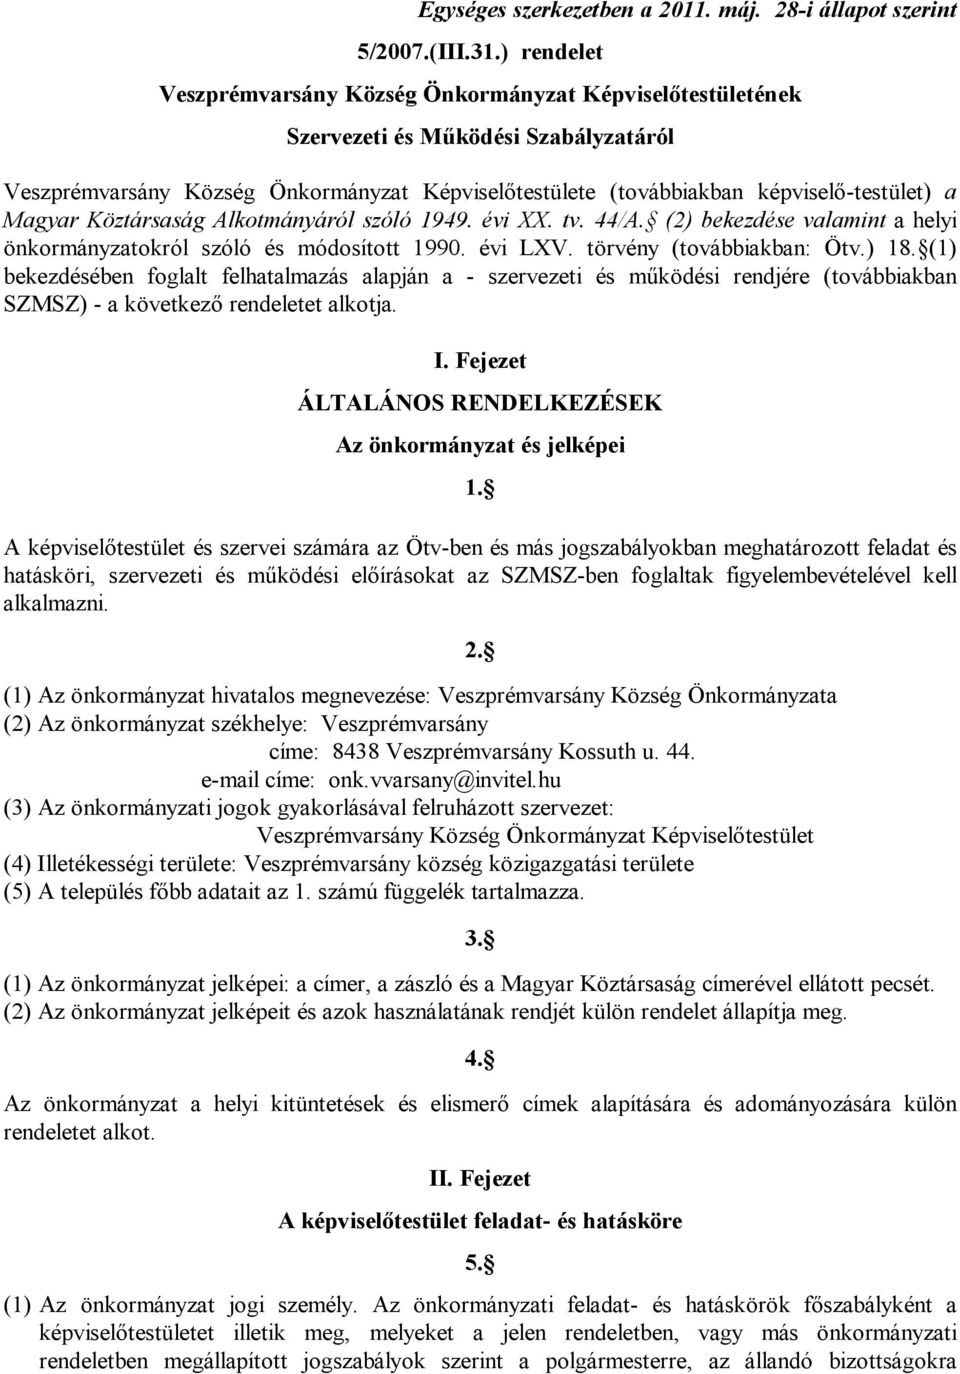 Magyar Köztársaság Alkotmányáról szóló 1949. évi XX. tv. 44/A. (2) bekezdése valamint a helyi önkormányzatokról szóló és módosított 1990. évi LXV. törvény (továbbiakban: Ötv.) 18.